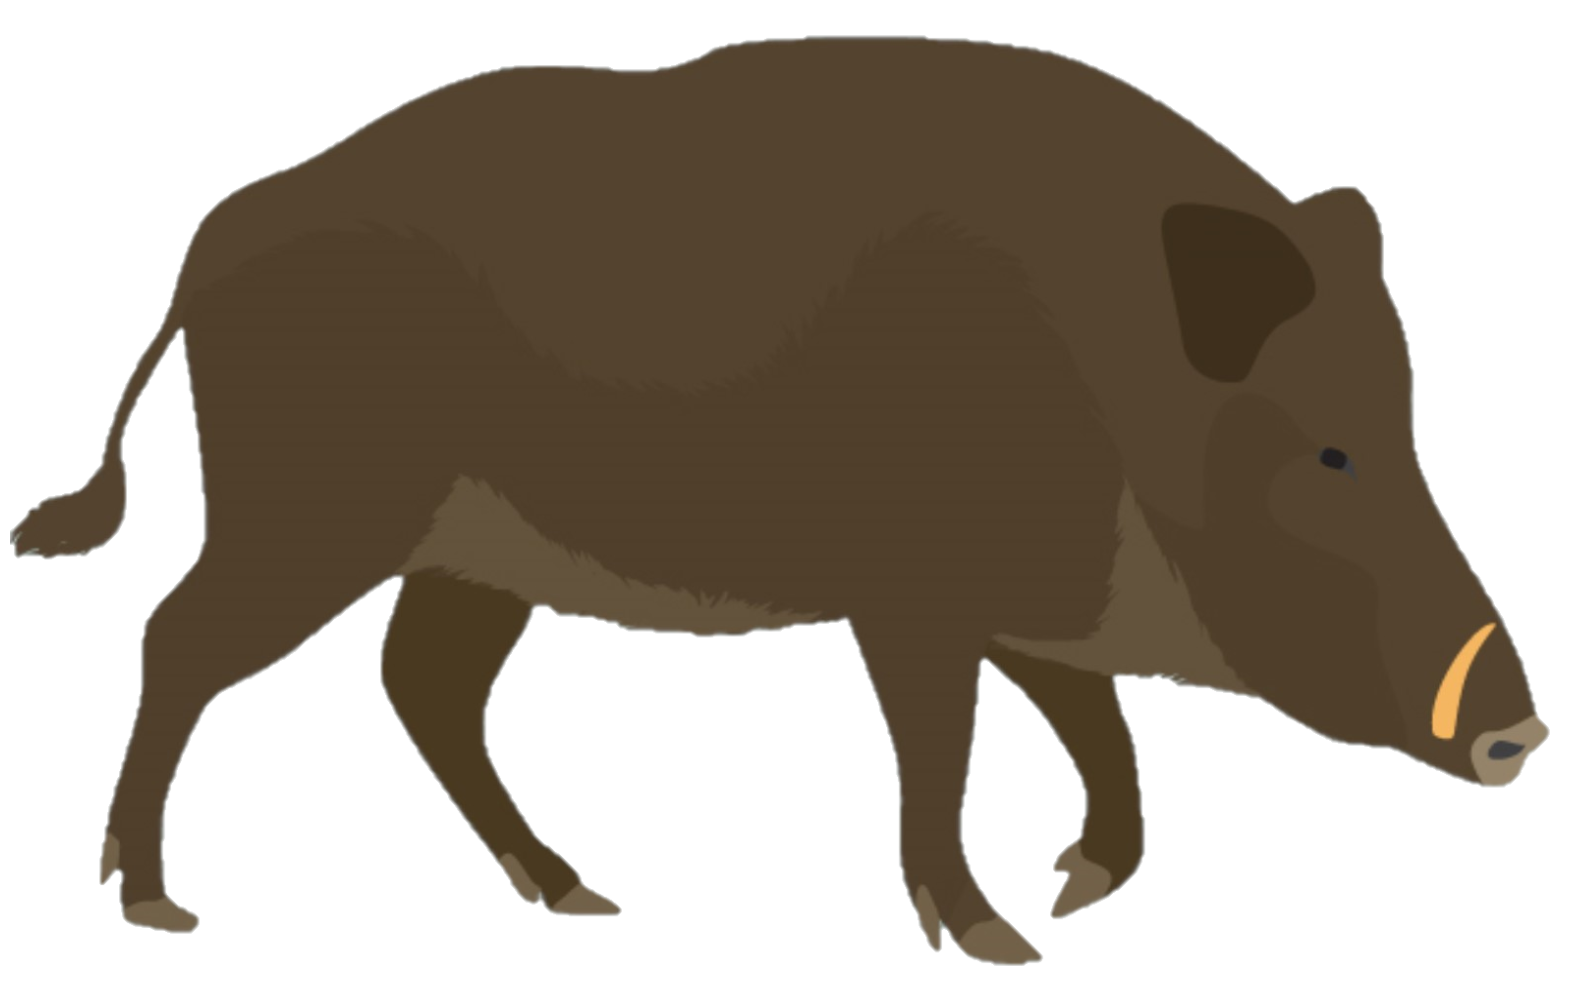 Wildschwein